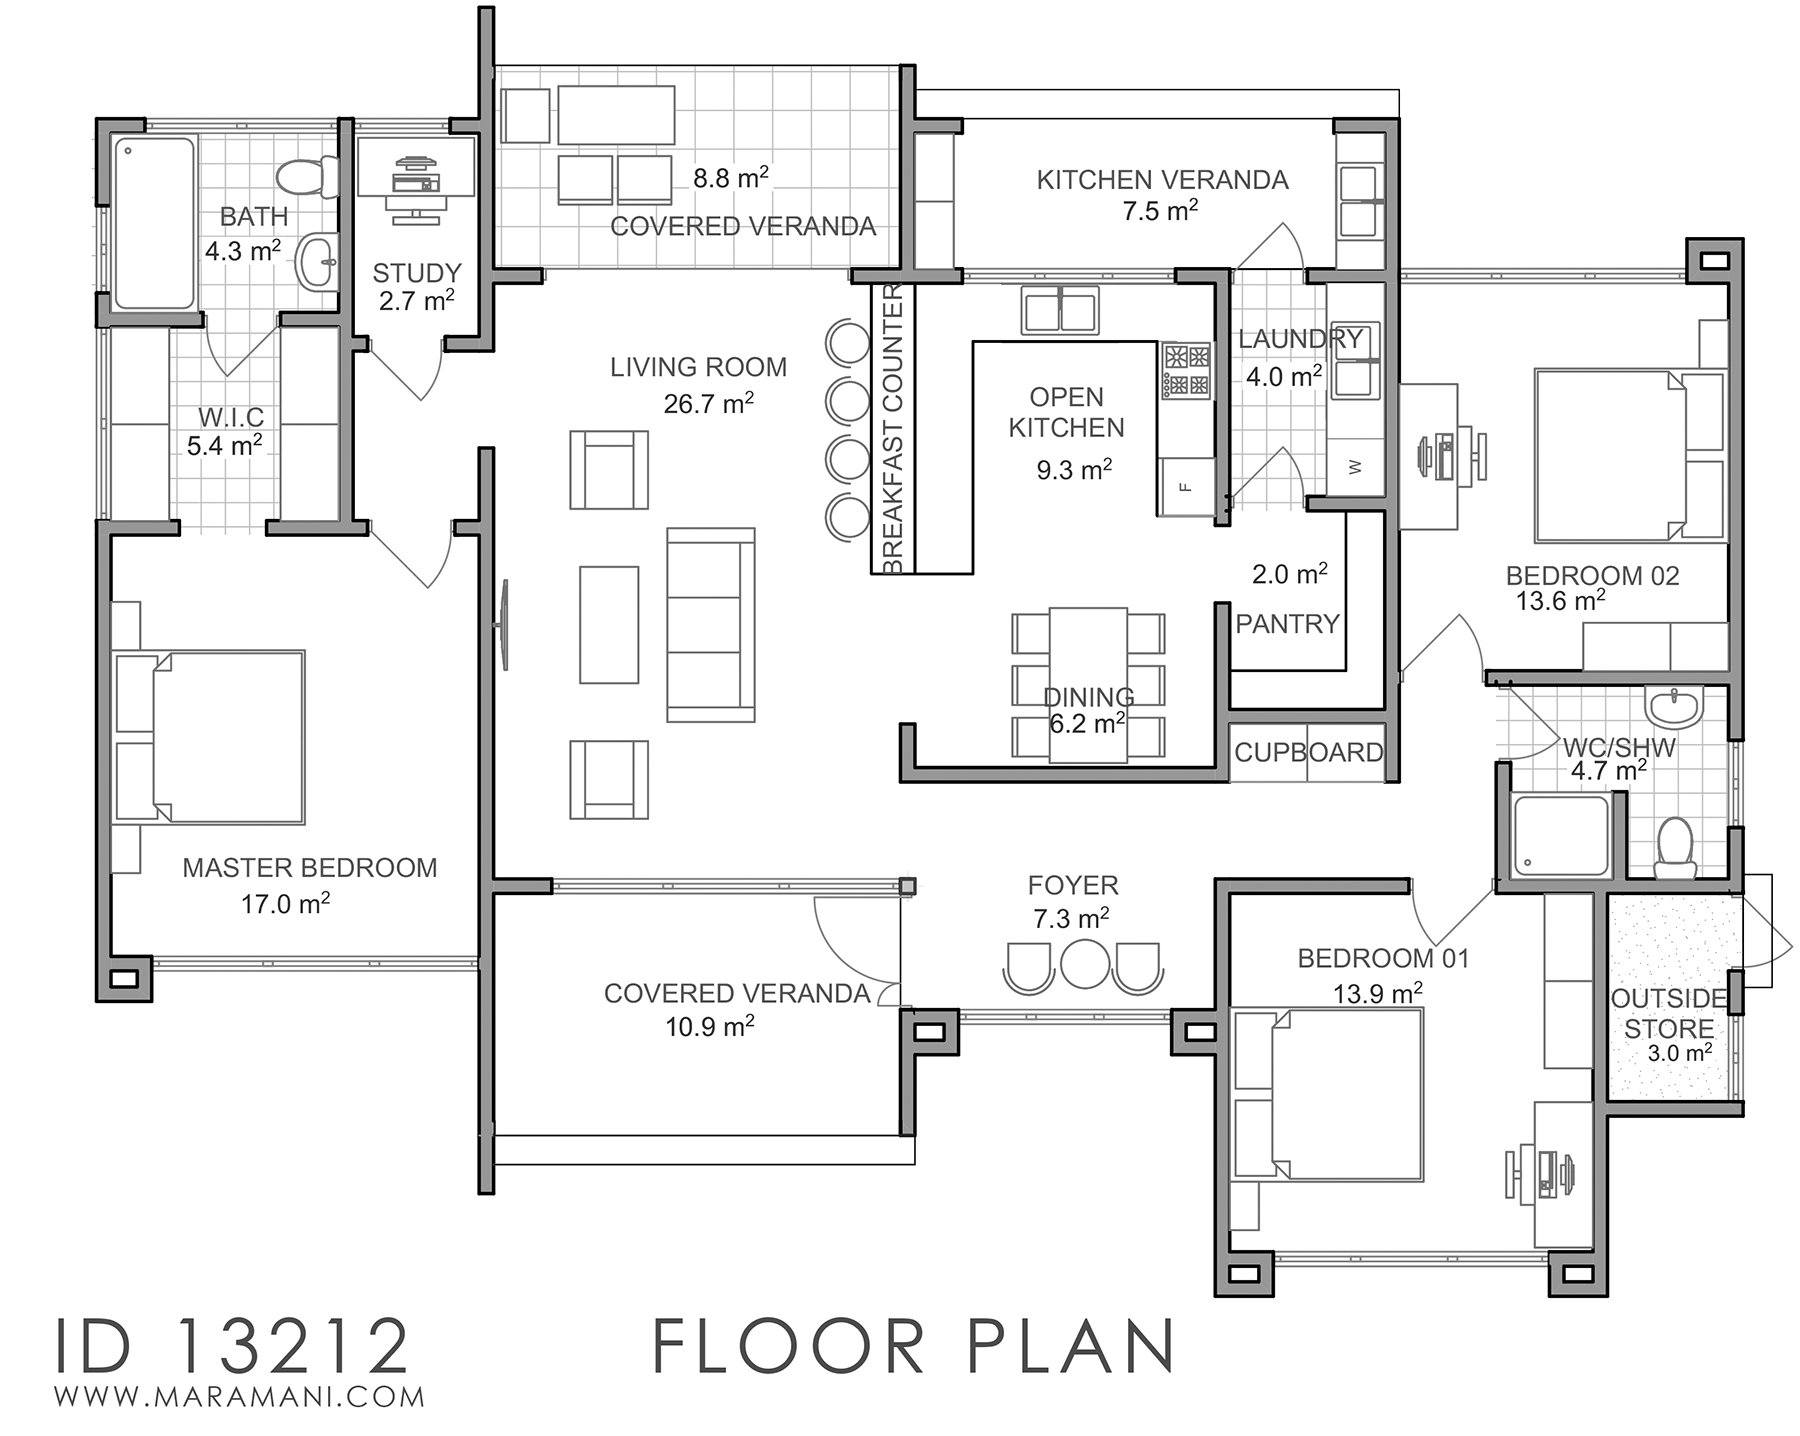 3 bedroom Building Plan - ID 13212